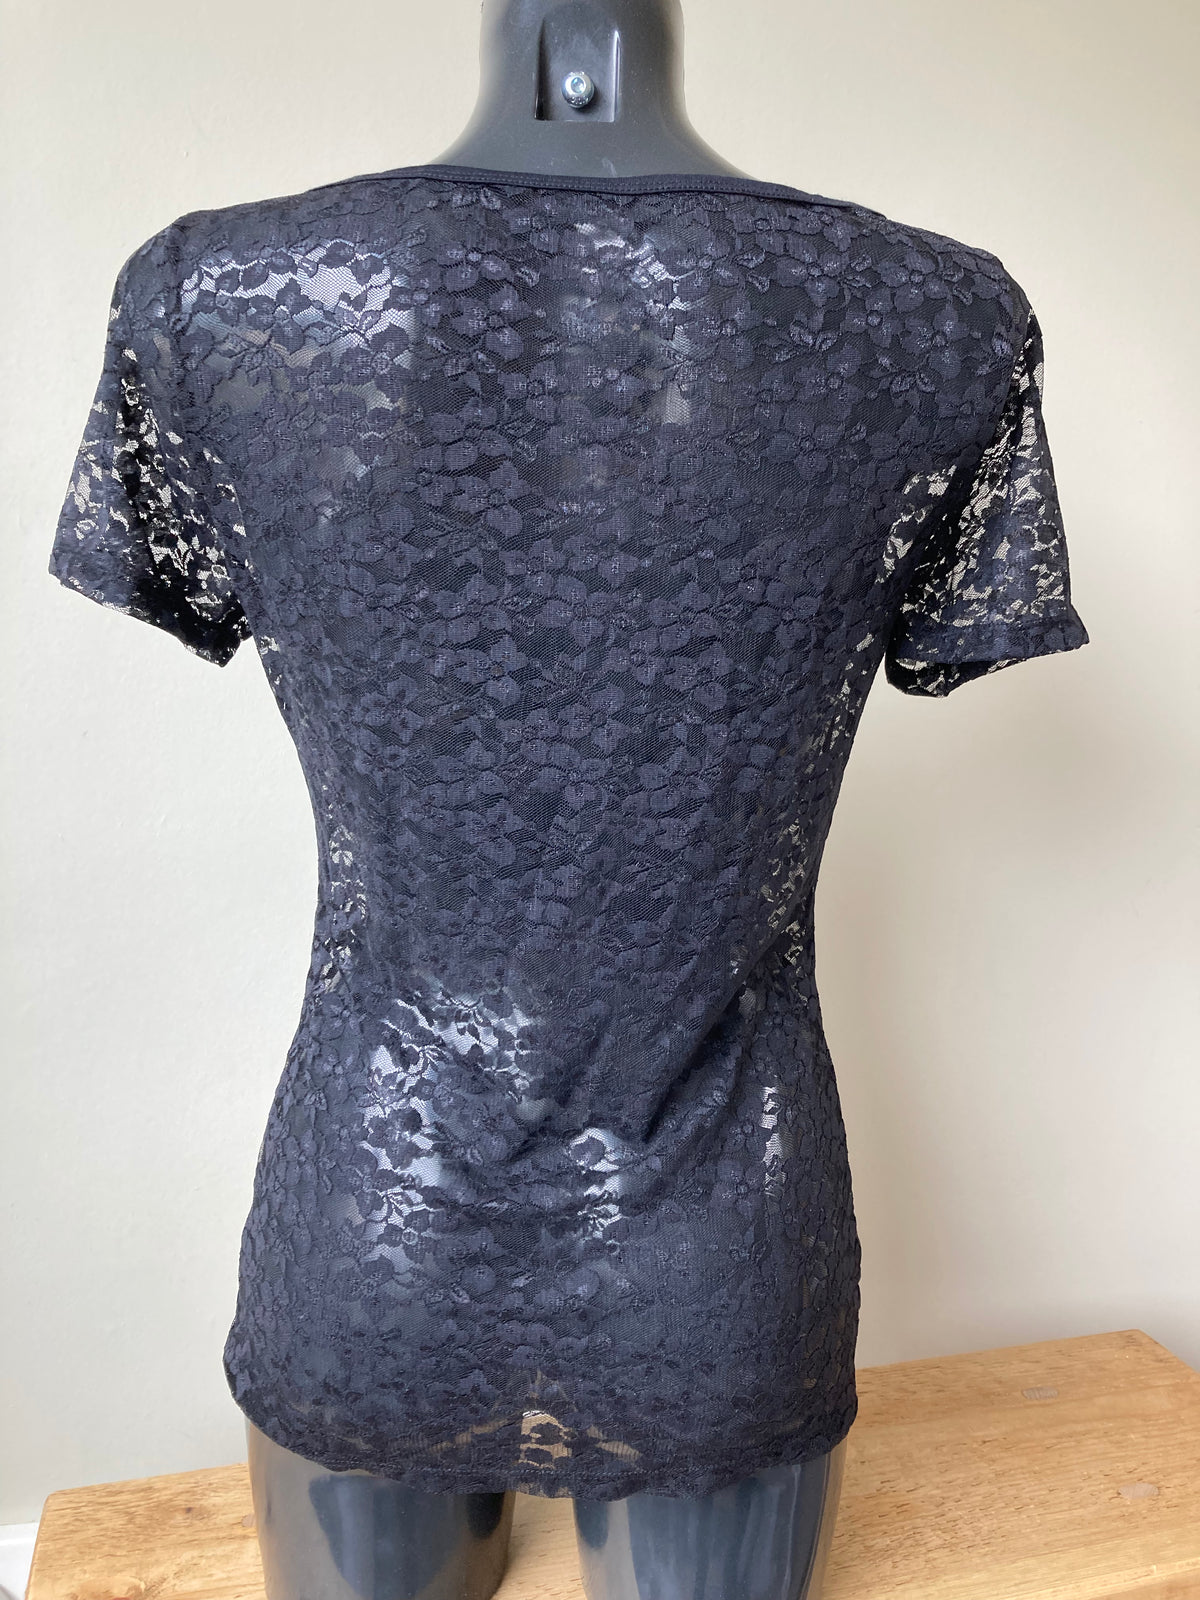 Black Lace Shirt by PETITE FLEUR - Size 12